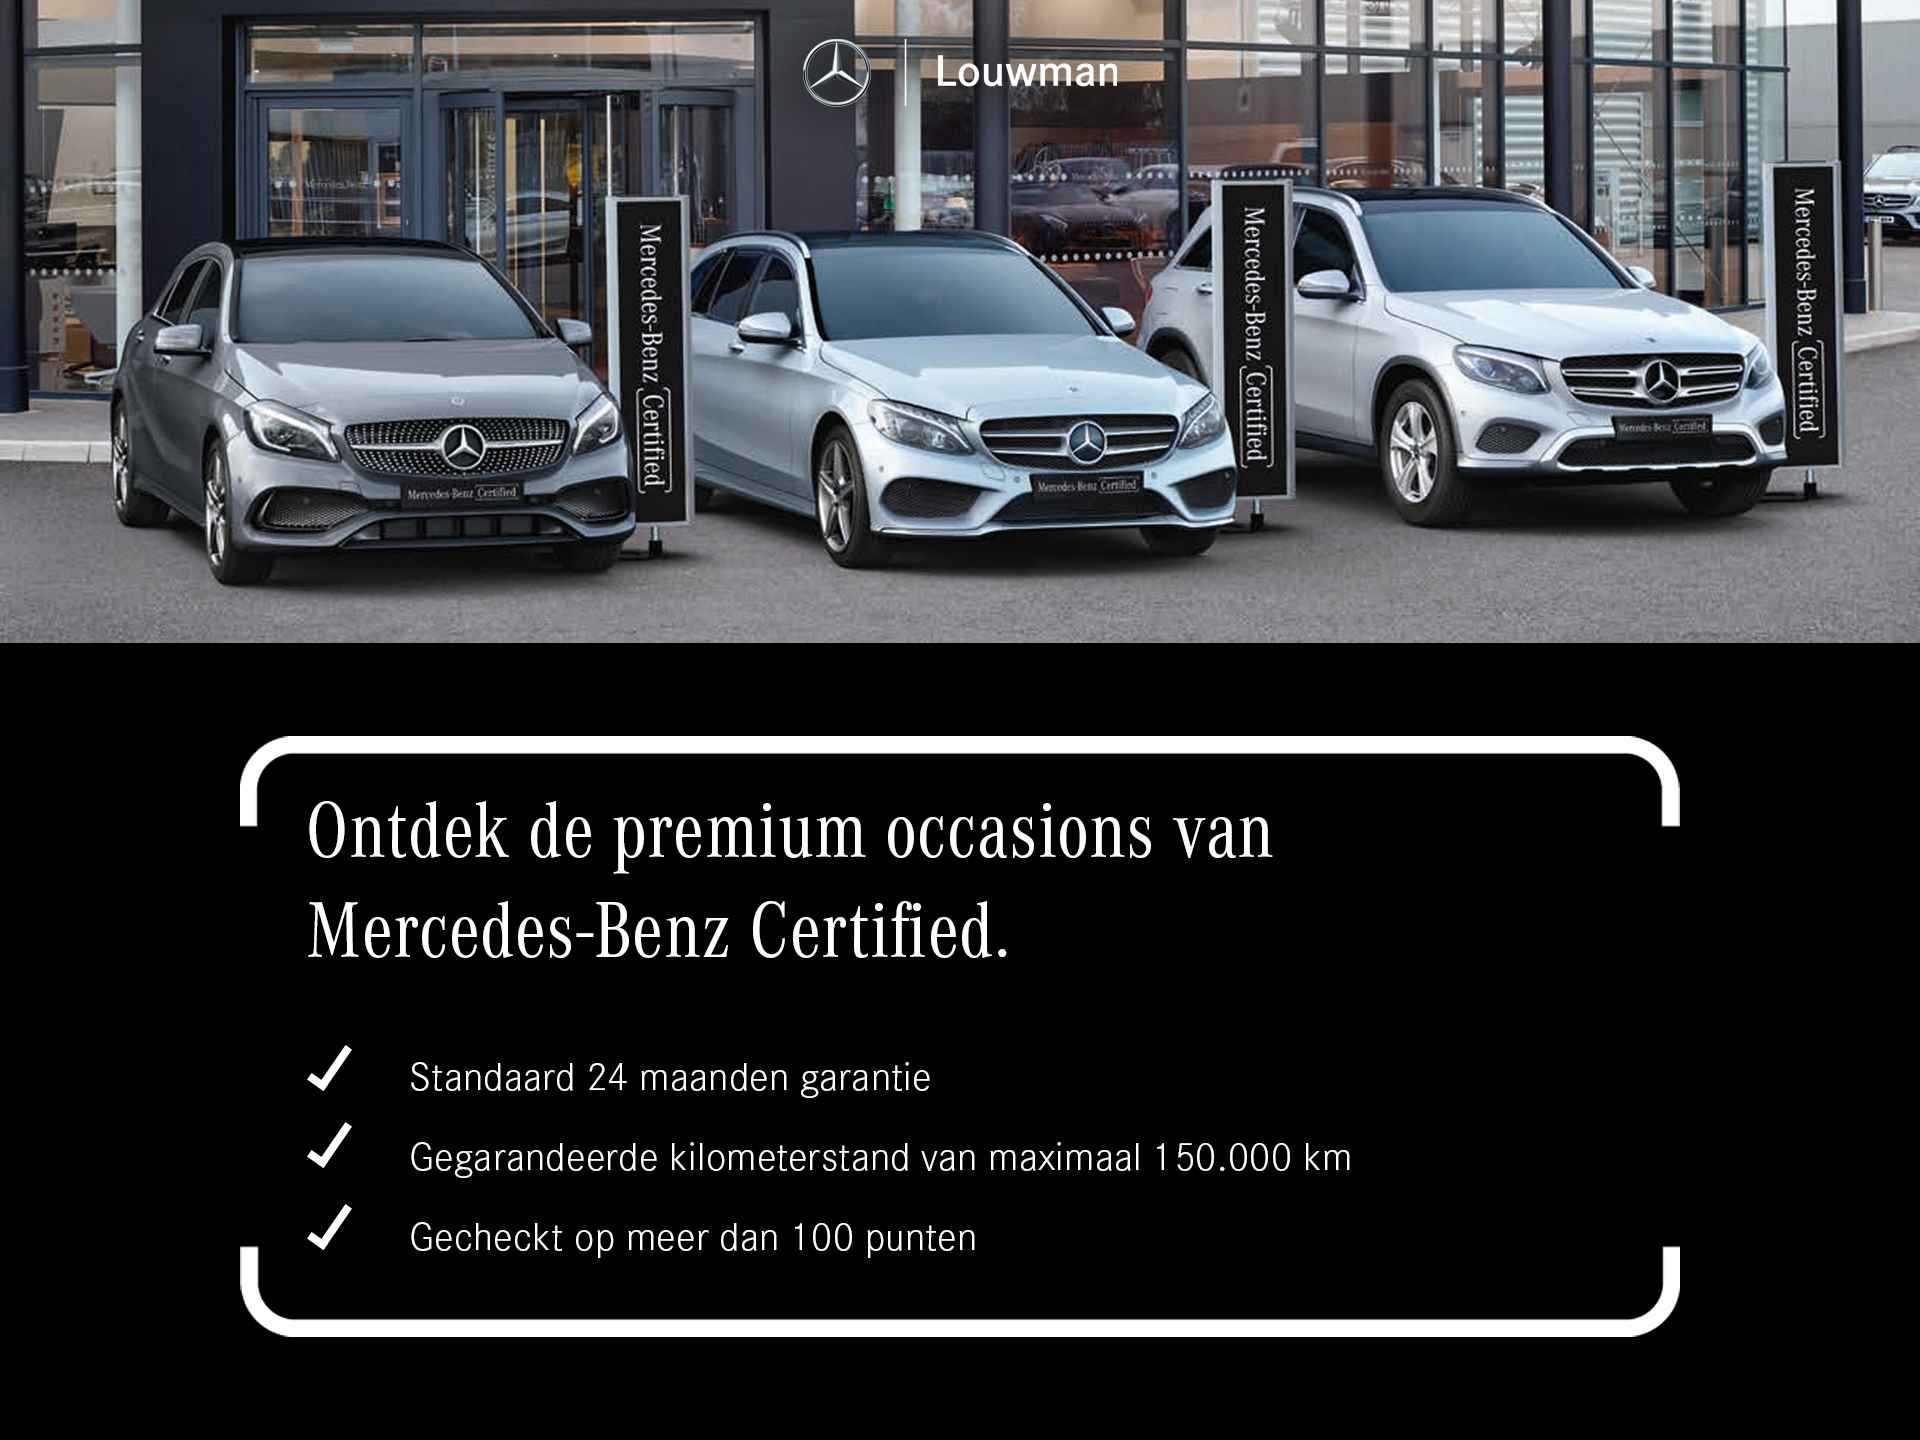 Mercedes-Benz CLE Coupé 300 4MATIC AMG Line | Grafiet grijs magno | 360° camera | Rijassistentiepakket plus |  Head-up display | Inclusief 24 maanden Mercedes-Benz Certified garantie voor Europa. - 44/45